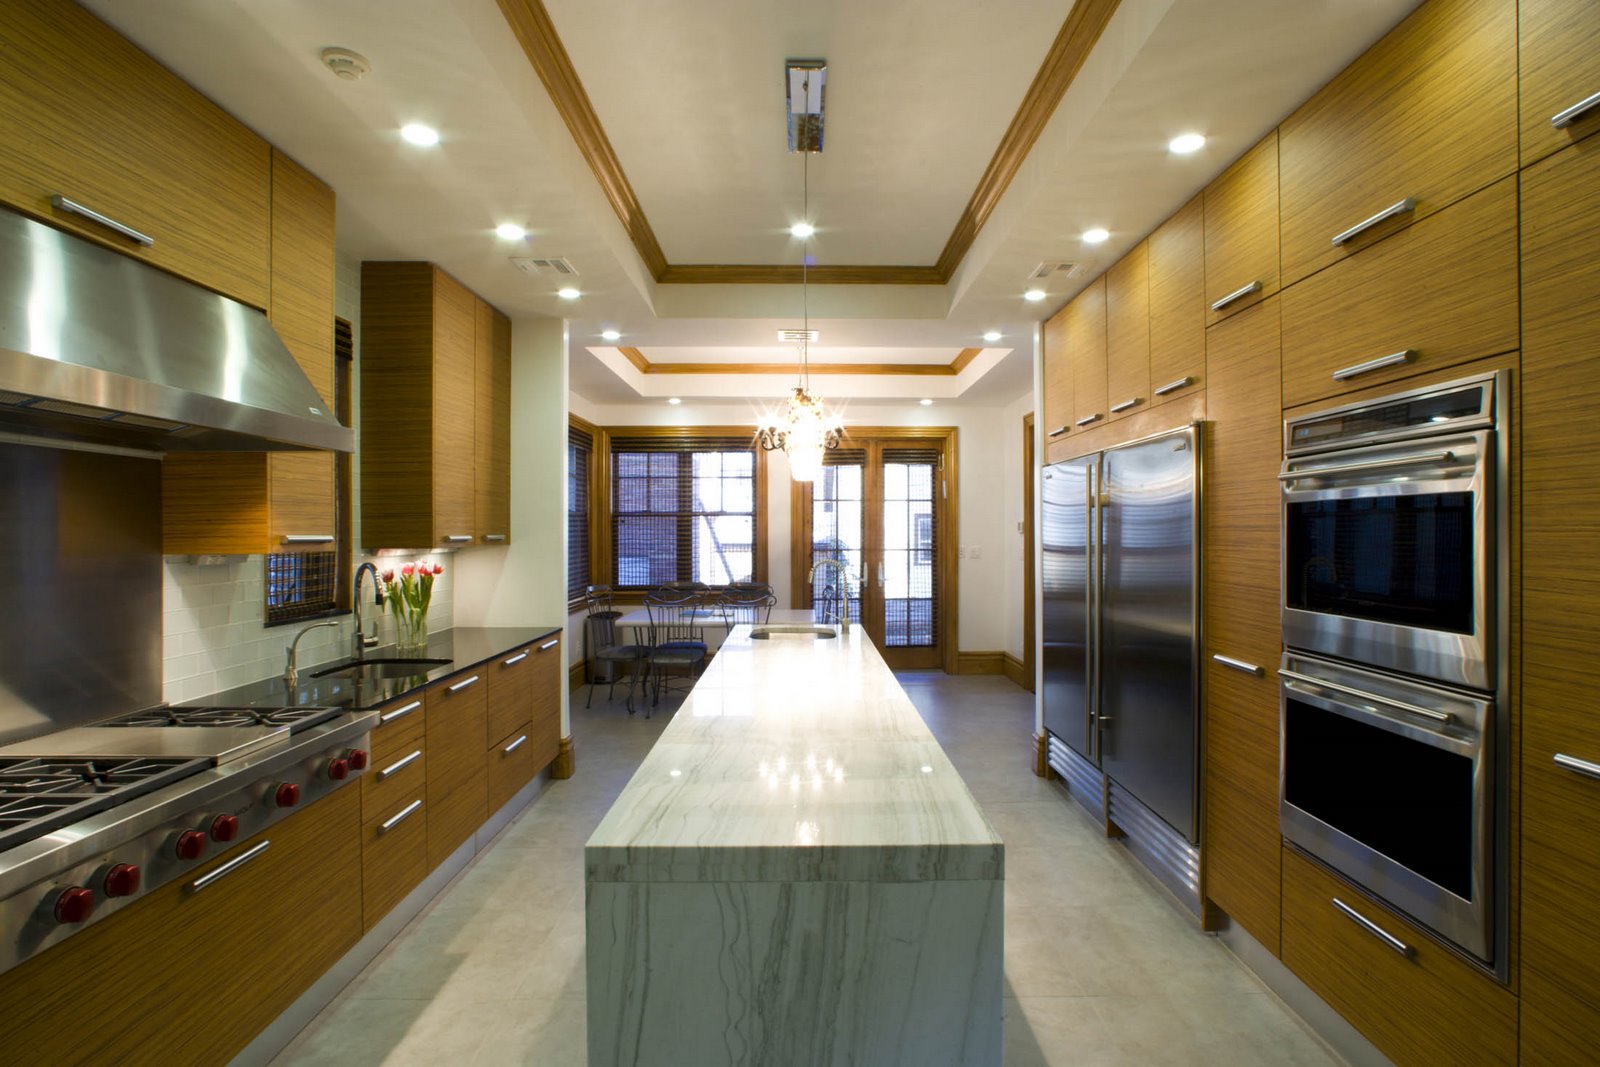 Designingkitchen Showroom on Best Kitchen Showrooms   Modern Kitchen Cabinets Design   Page 2